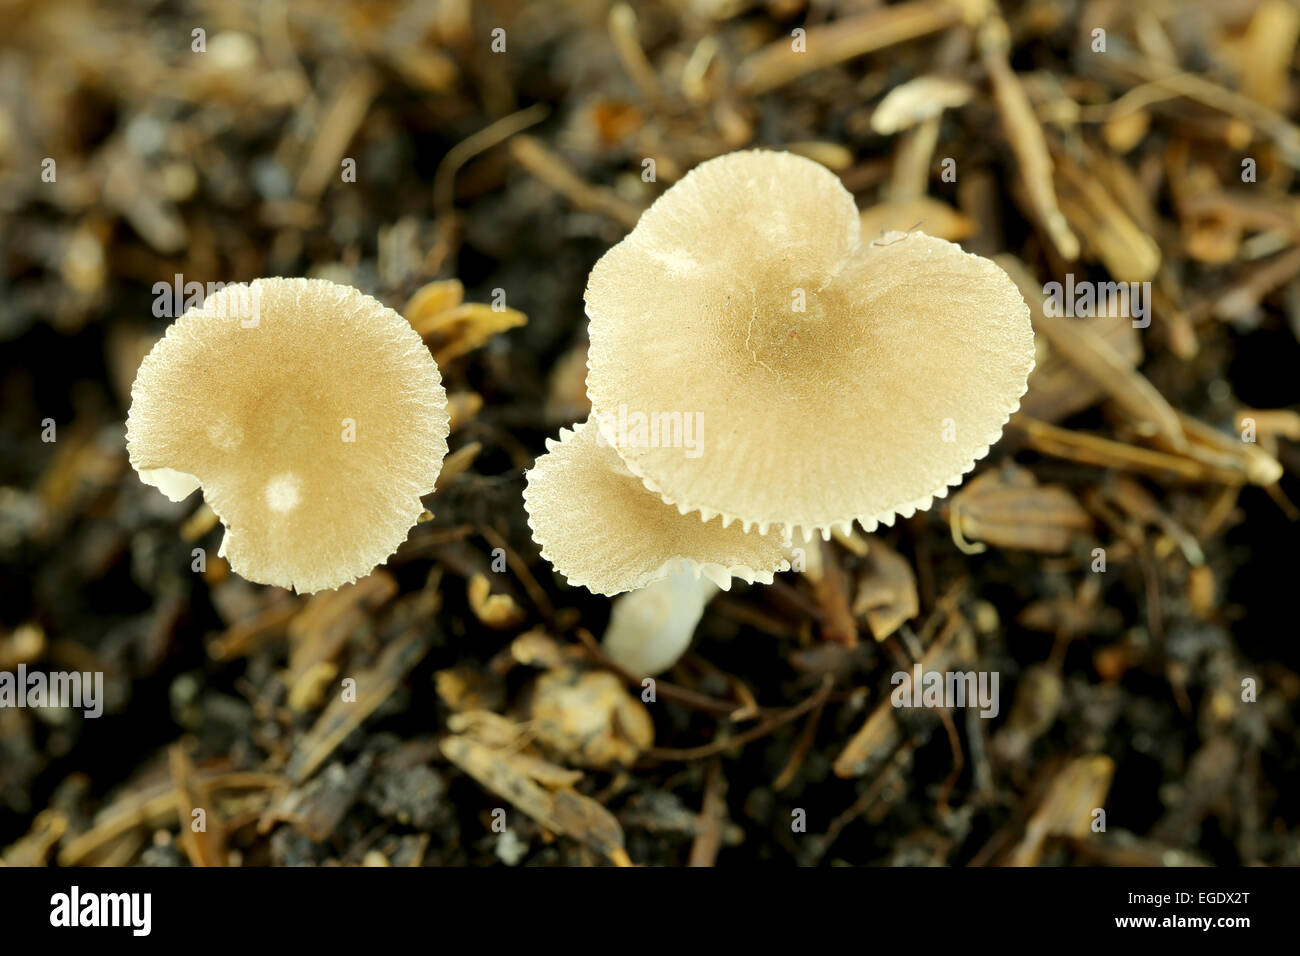 wild mushrooms on ground in macro style. Stock Photo